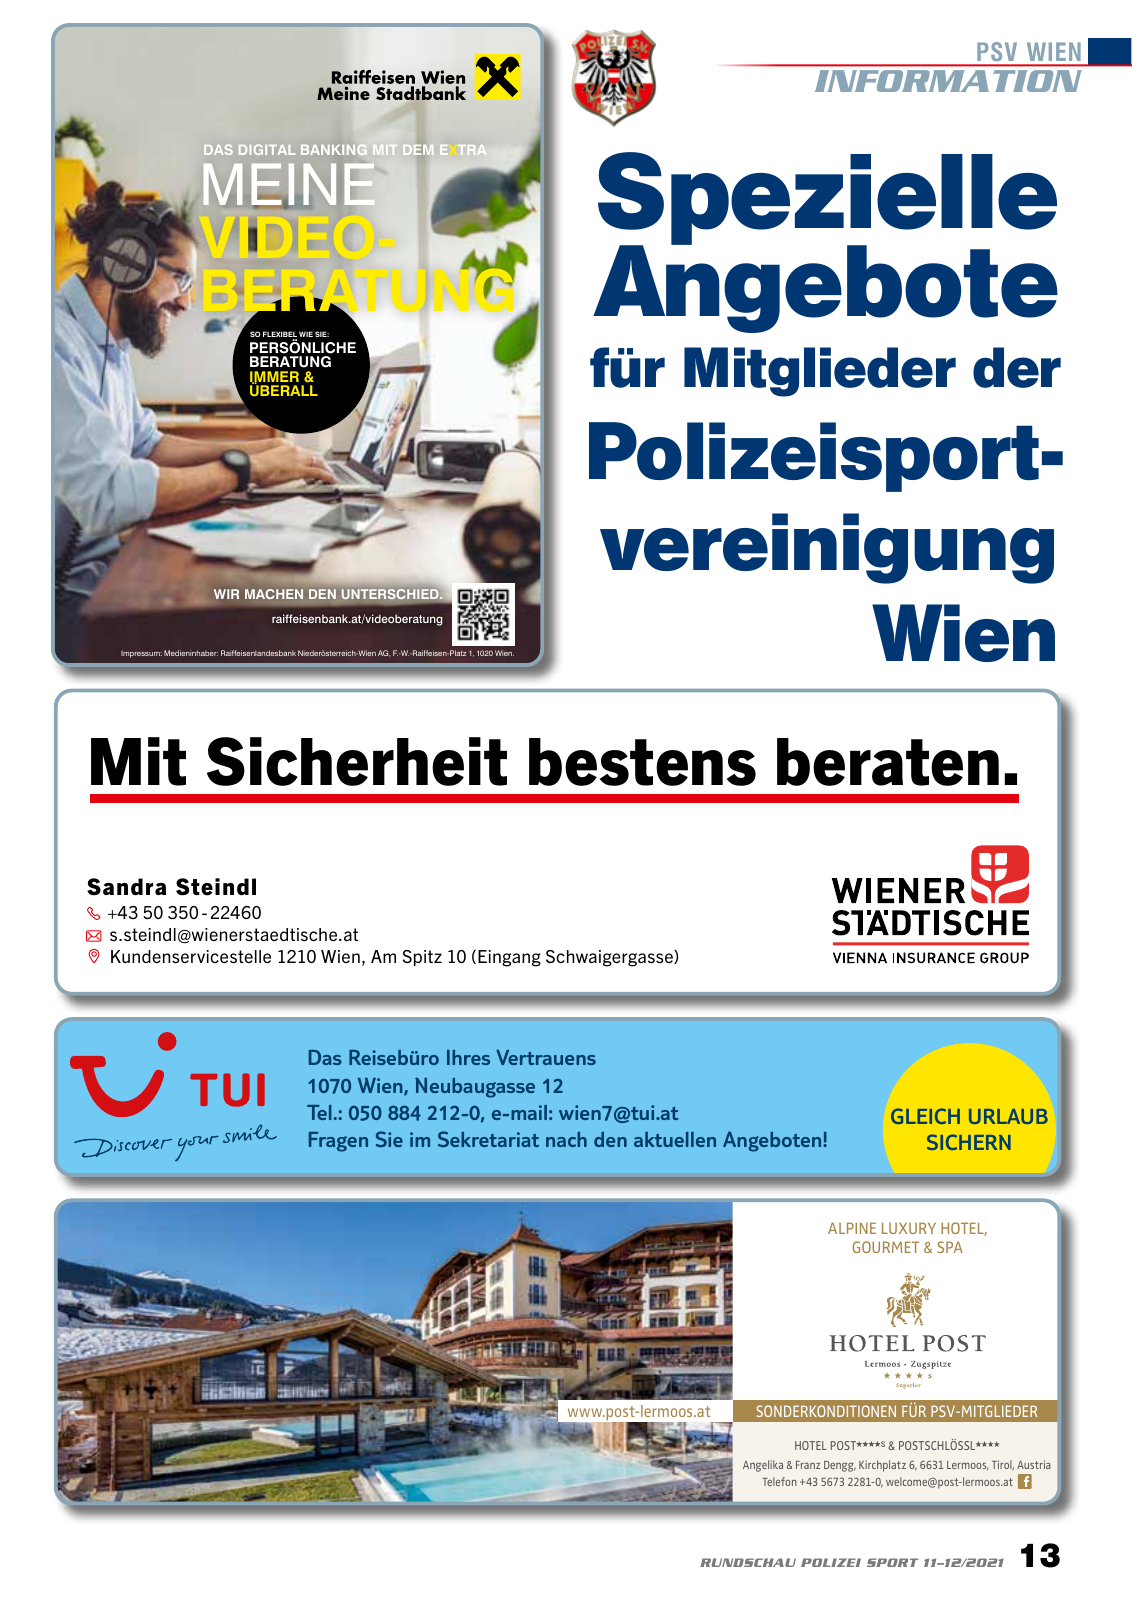 Vorschau Rundschau Polizei Sport 11-12/2021 Seite 13